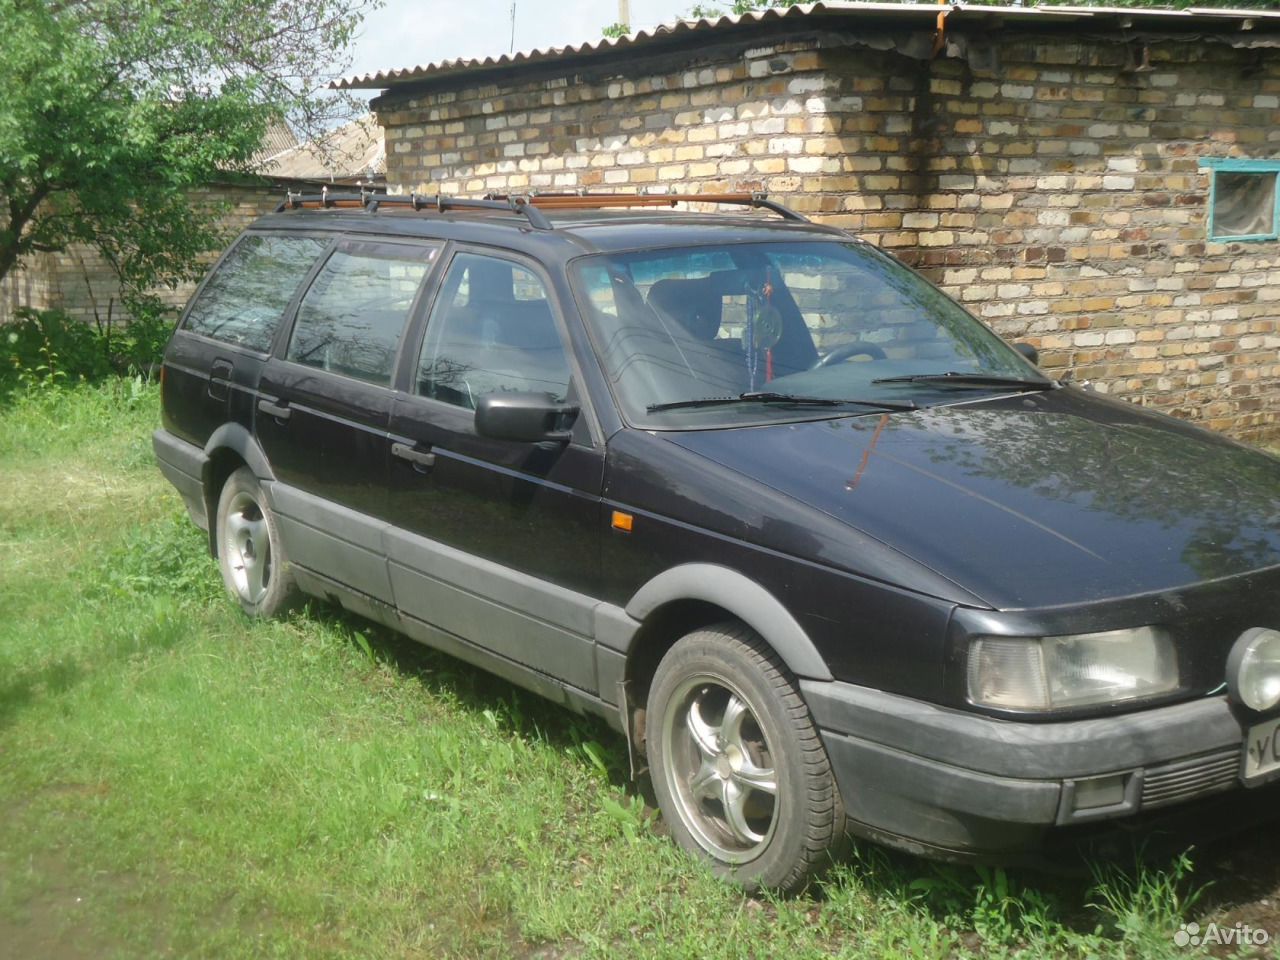 Фольксваген Пассат 1993 года универсал. Volkswagen Passat b3 универсал 1993. Volkswagen b 3 универсал чёрный. Фольксваген Пассат б3 универсал черный. Фольксваген универсал бу авито